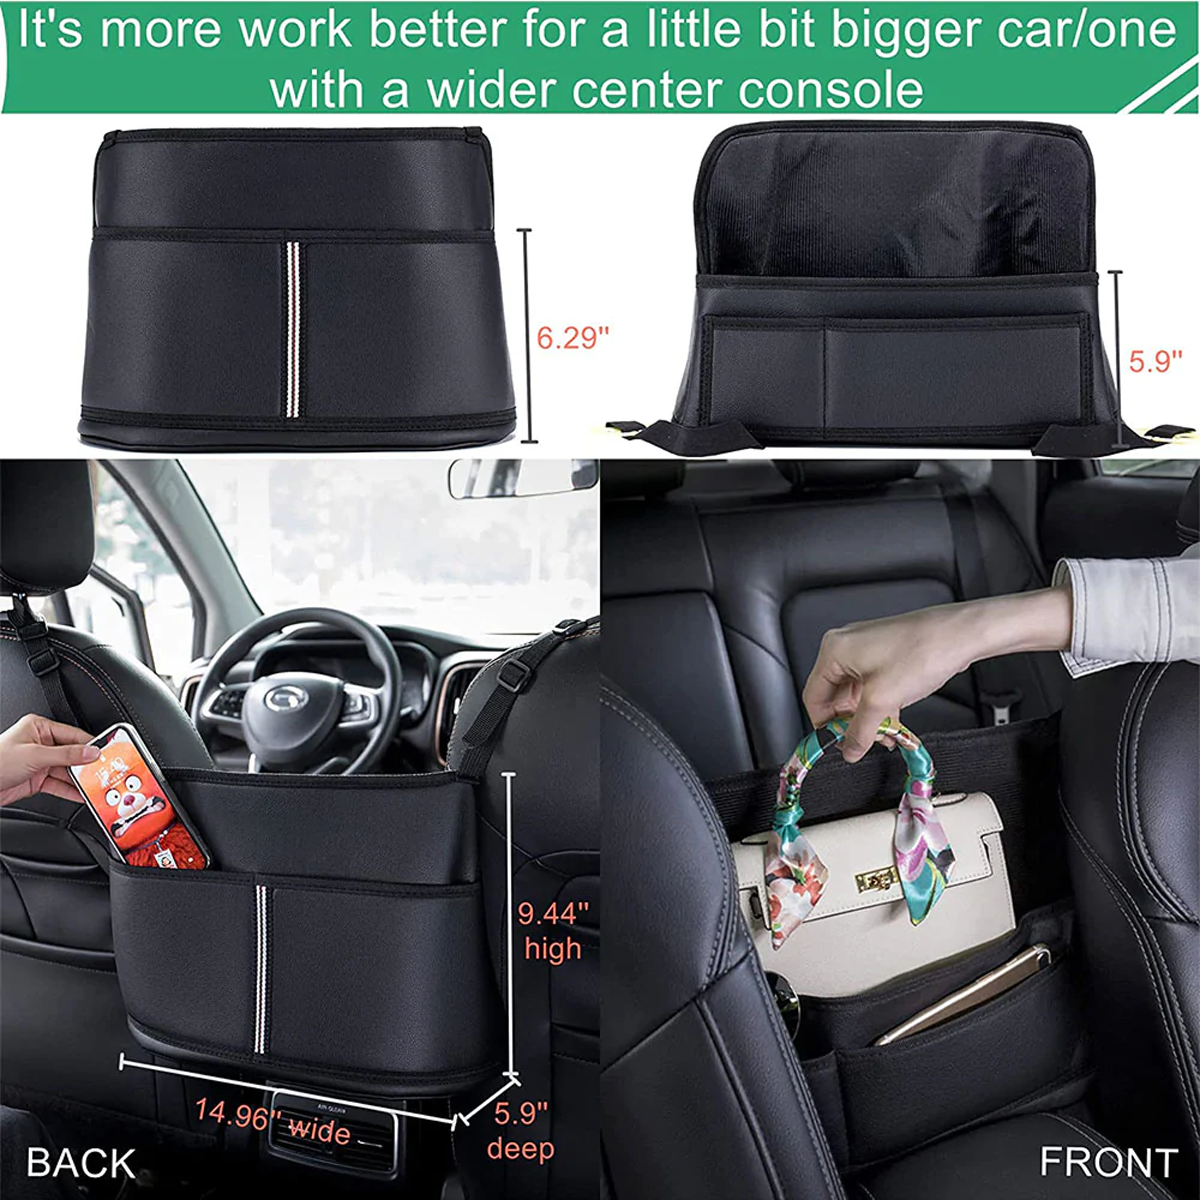 Car Purse Holder for Car Handbag Holder Between Seats Premium PU Leather, Custom Fit For Car, Hanging Car Purse Storage Pocket Back Seat Pet Barrier DLTS223